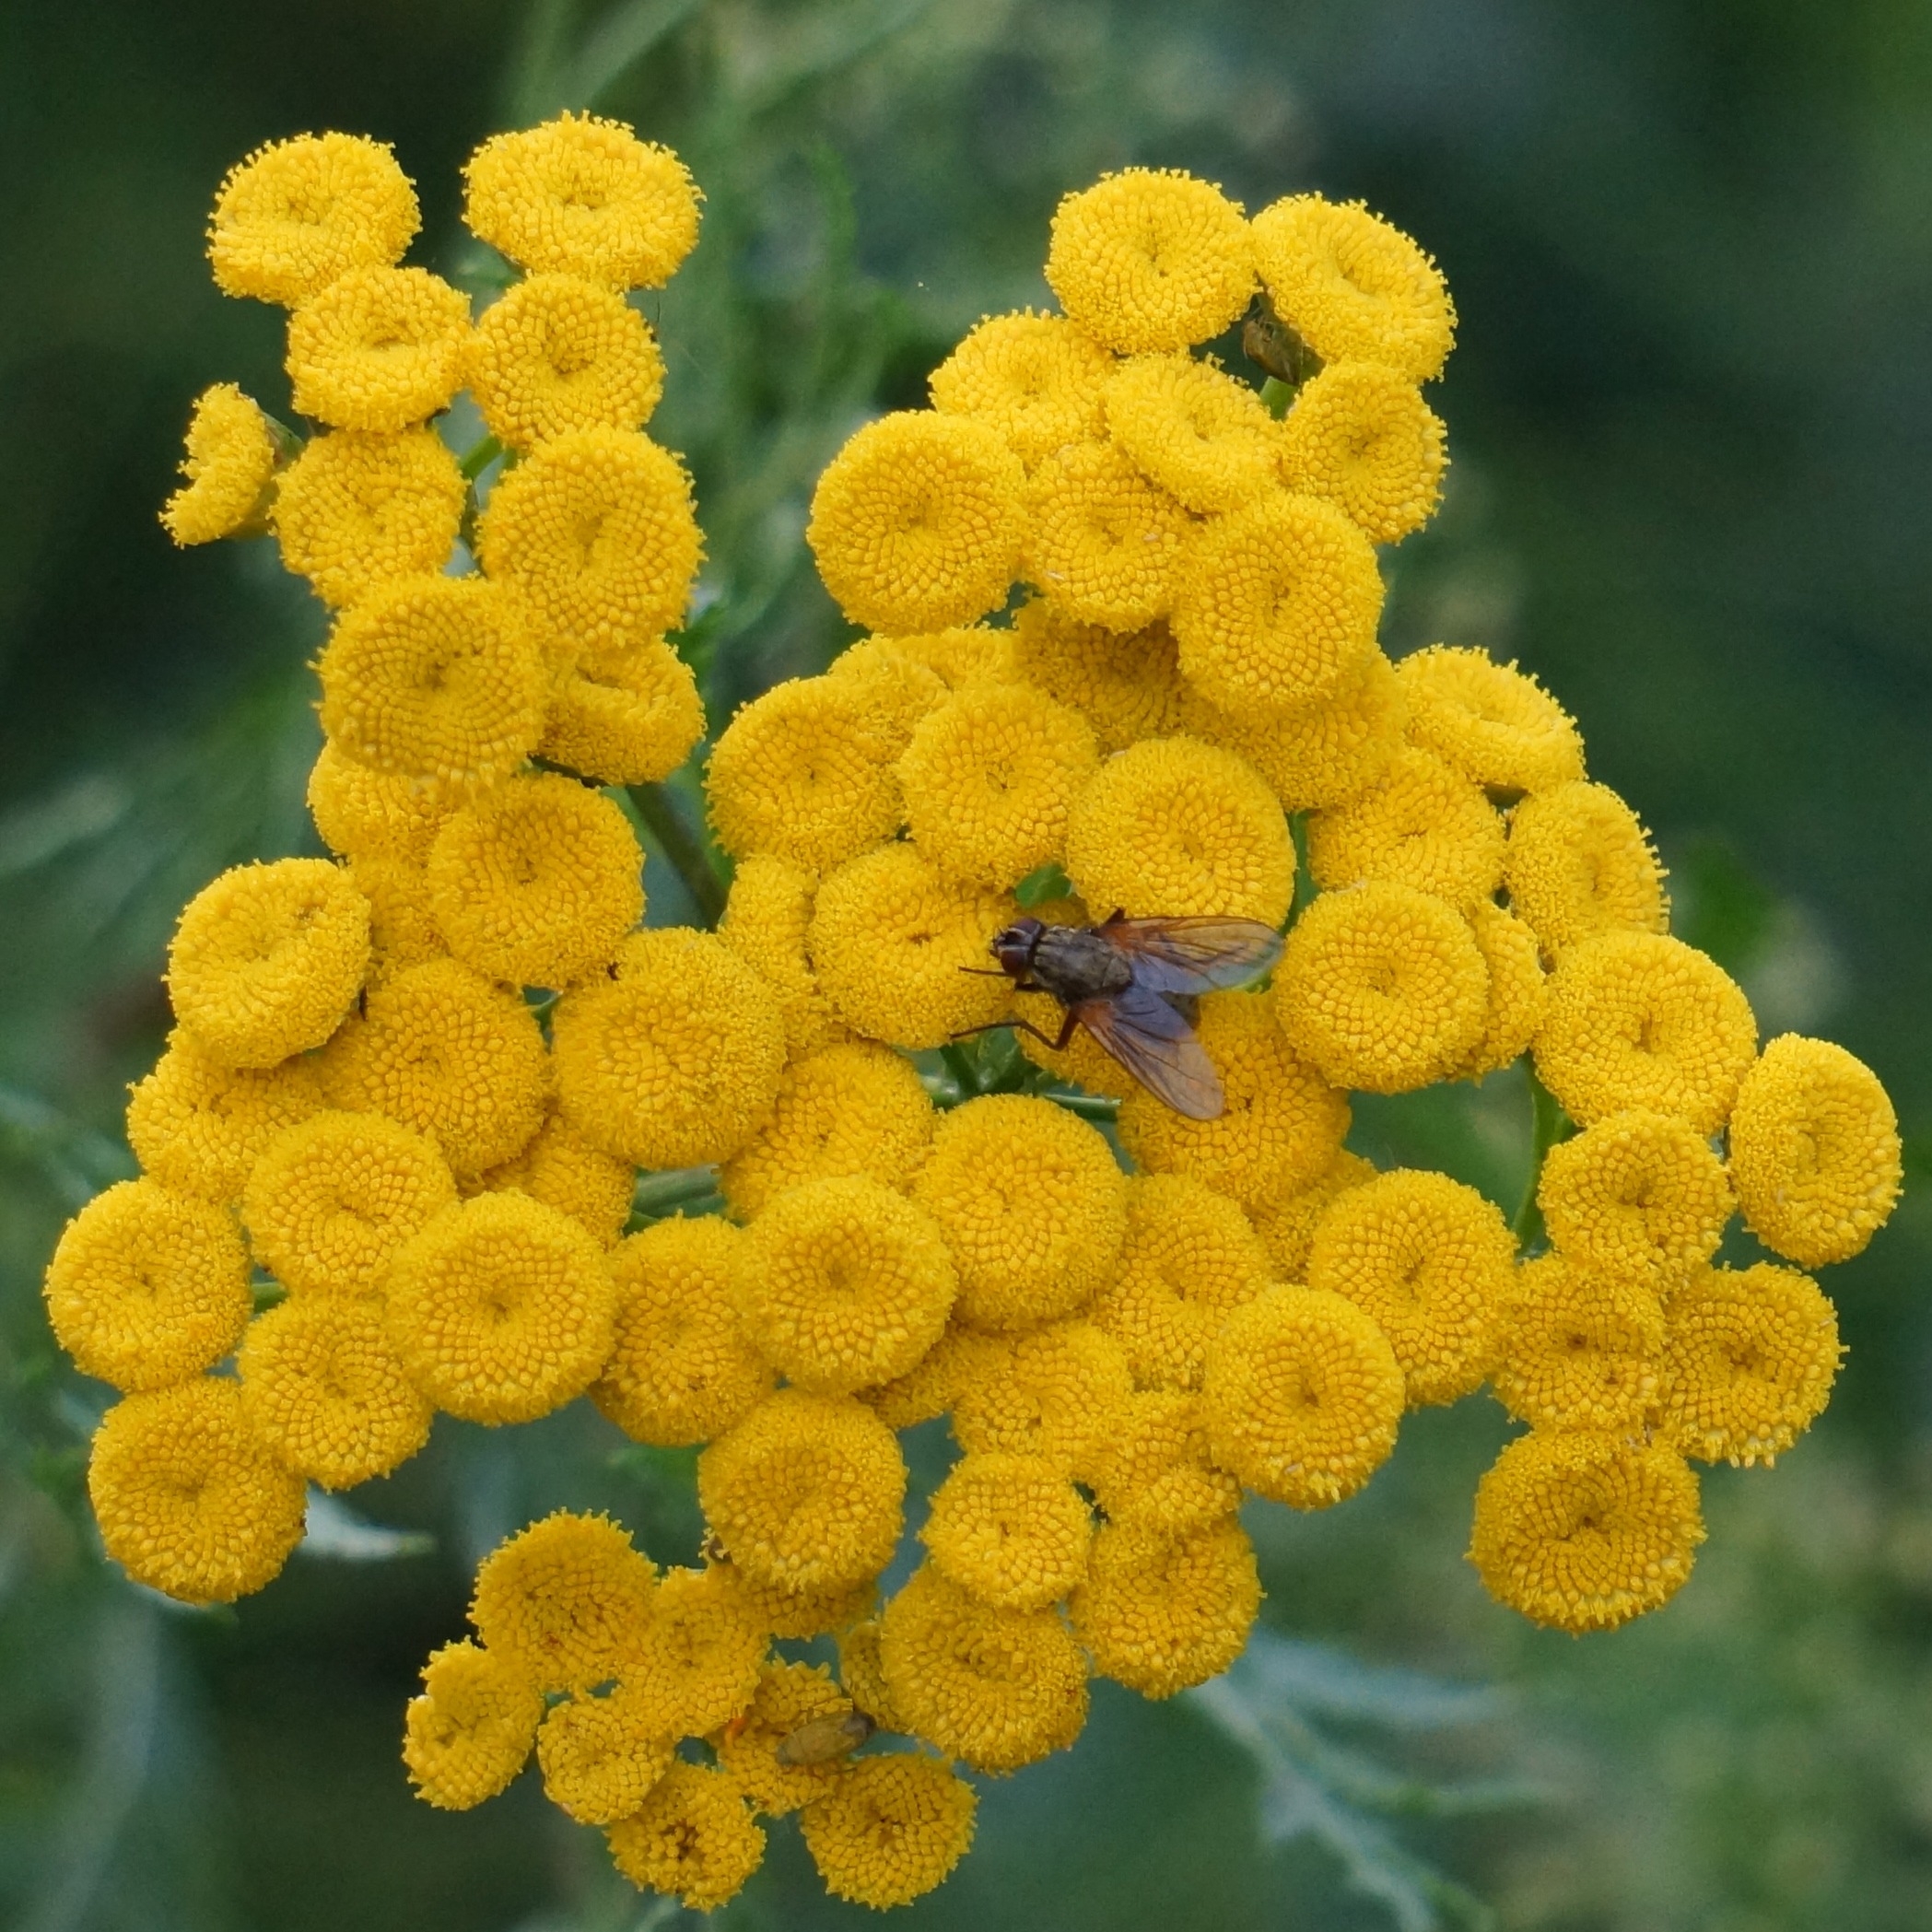 Желтые цветы: самые красивые садовые многолетники с желтыми и оранжевыми цветками, ТОП 60